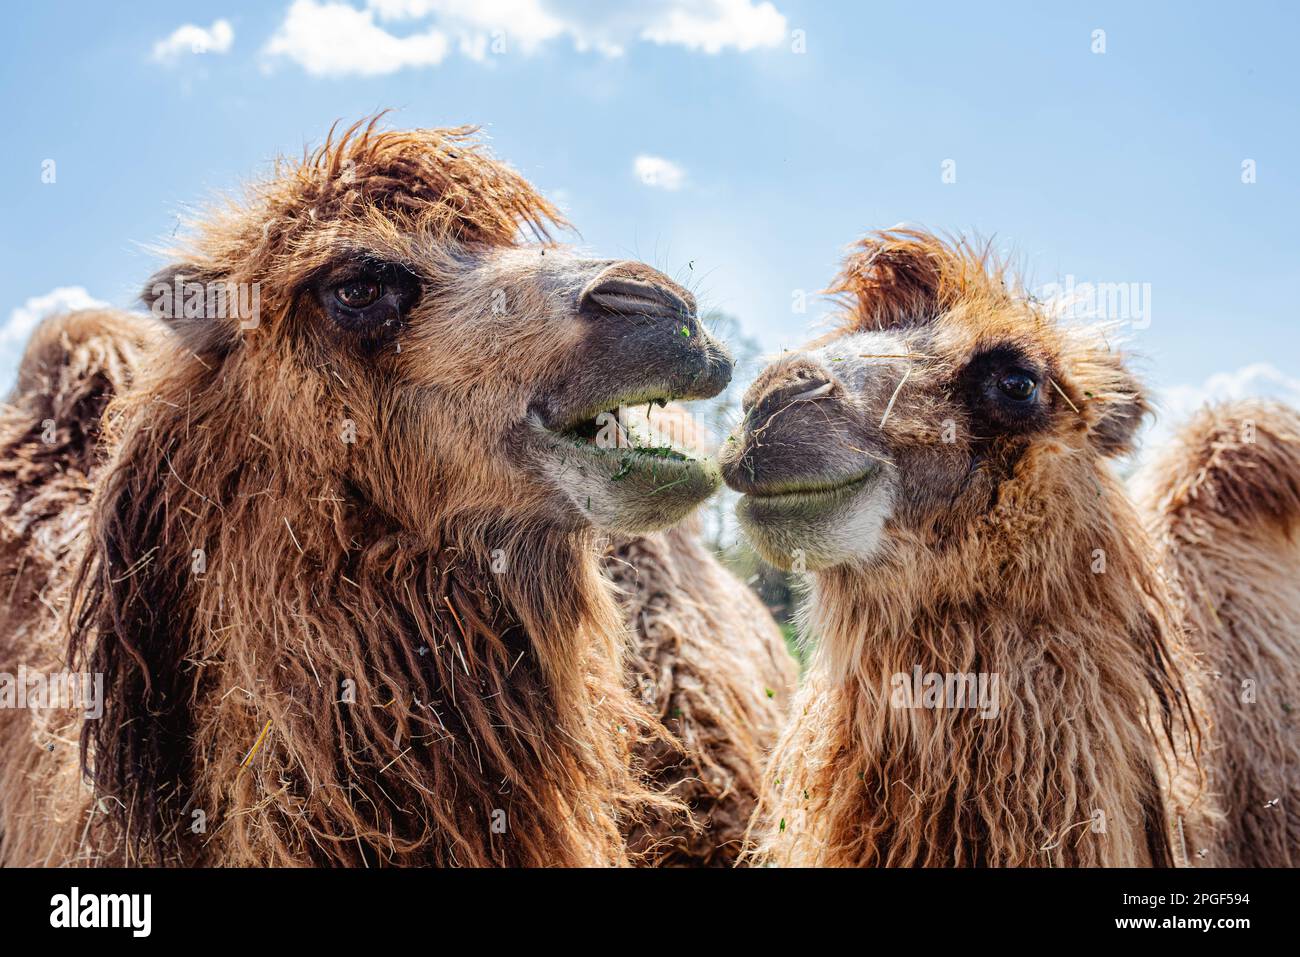 gustati i cammelli godendo una giornata di sole che mangia erba in safari, sembrano divertenti, foto molto luminosa e bella, i cammelli stanno sorridendo l'un l'altro Foto Stock